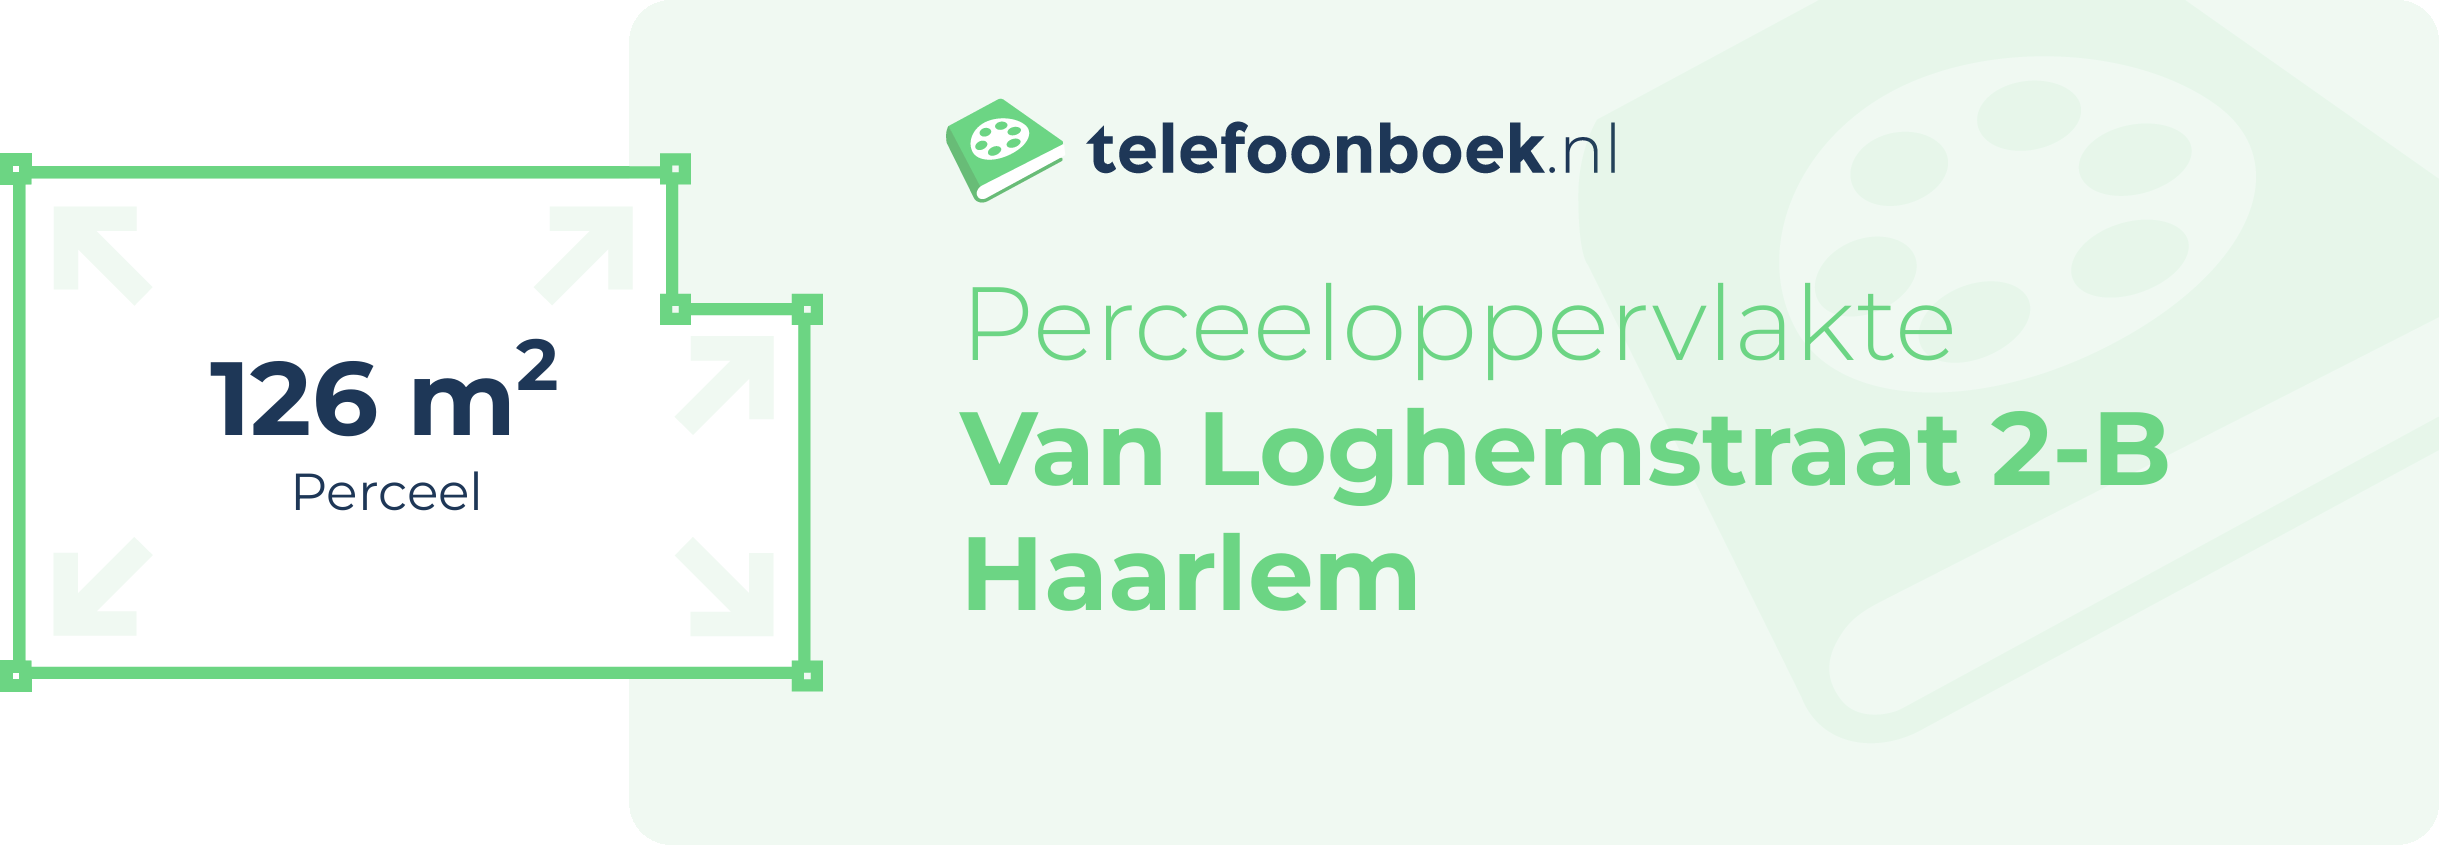 Perceeloppervlakte Van Loghemstraat 2-B Haarlem